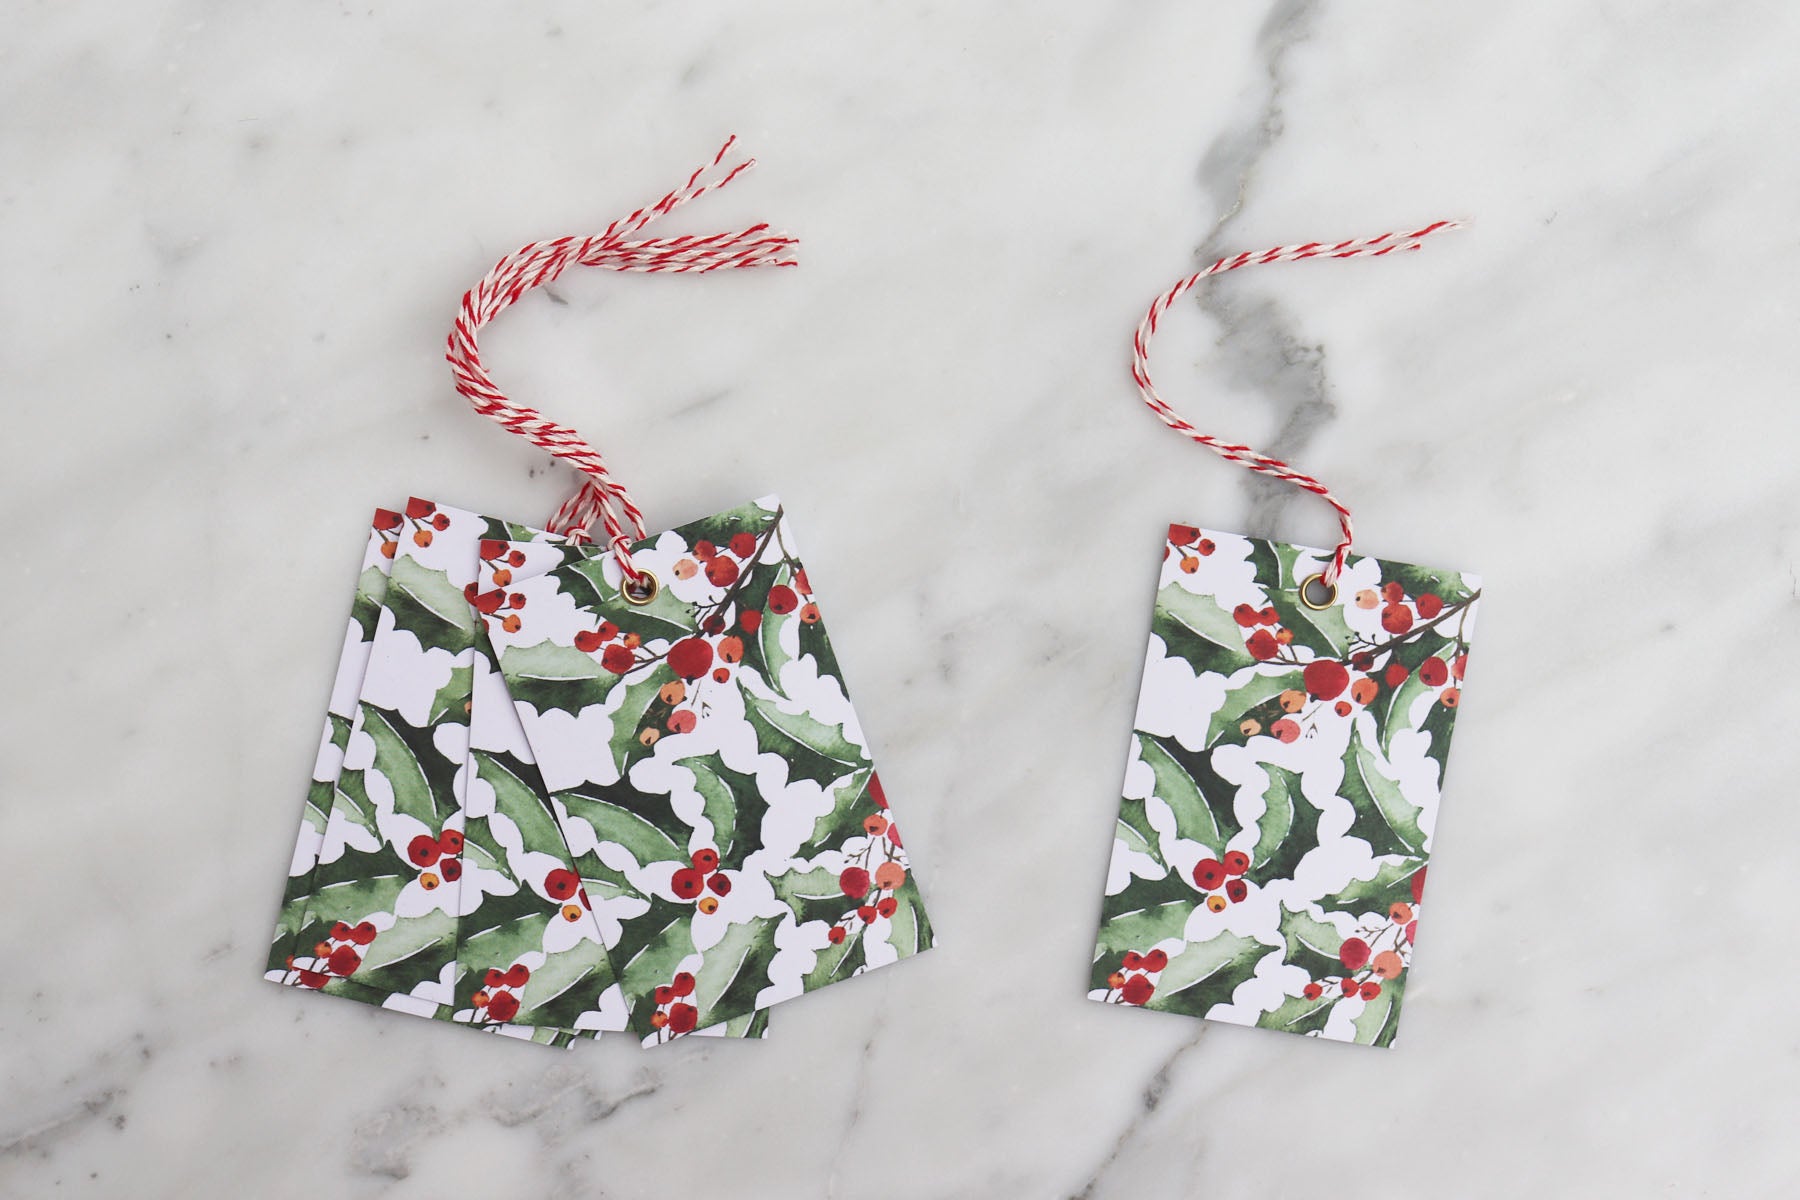 Elegant Holly Foil Christmas Gift Wrap Full Ream 833 ft x 24 in